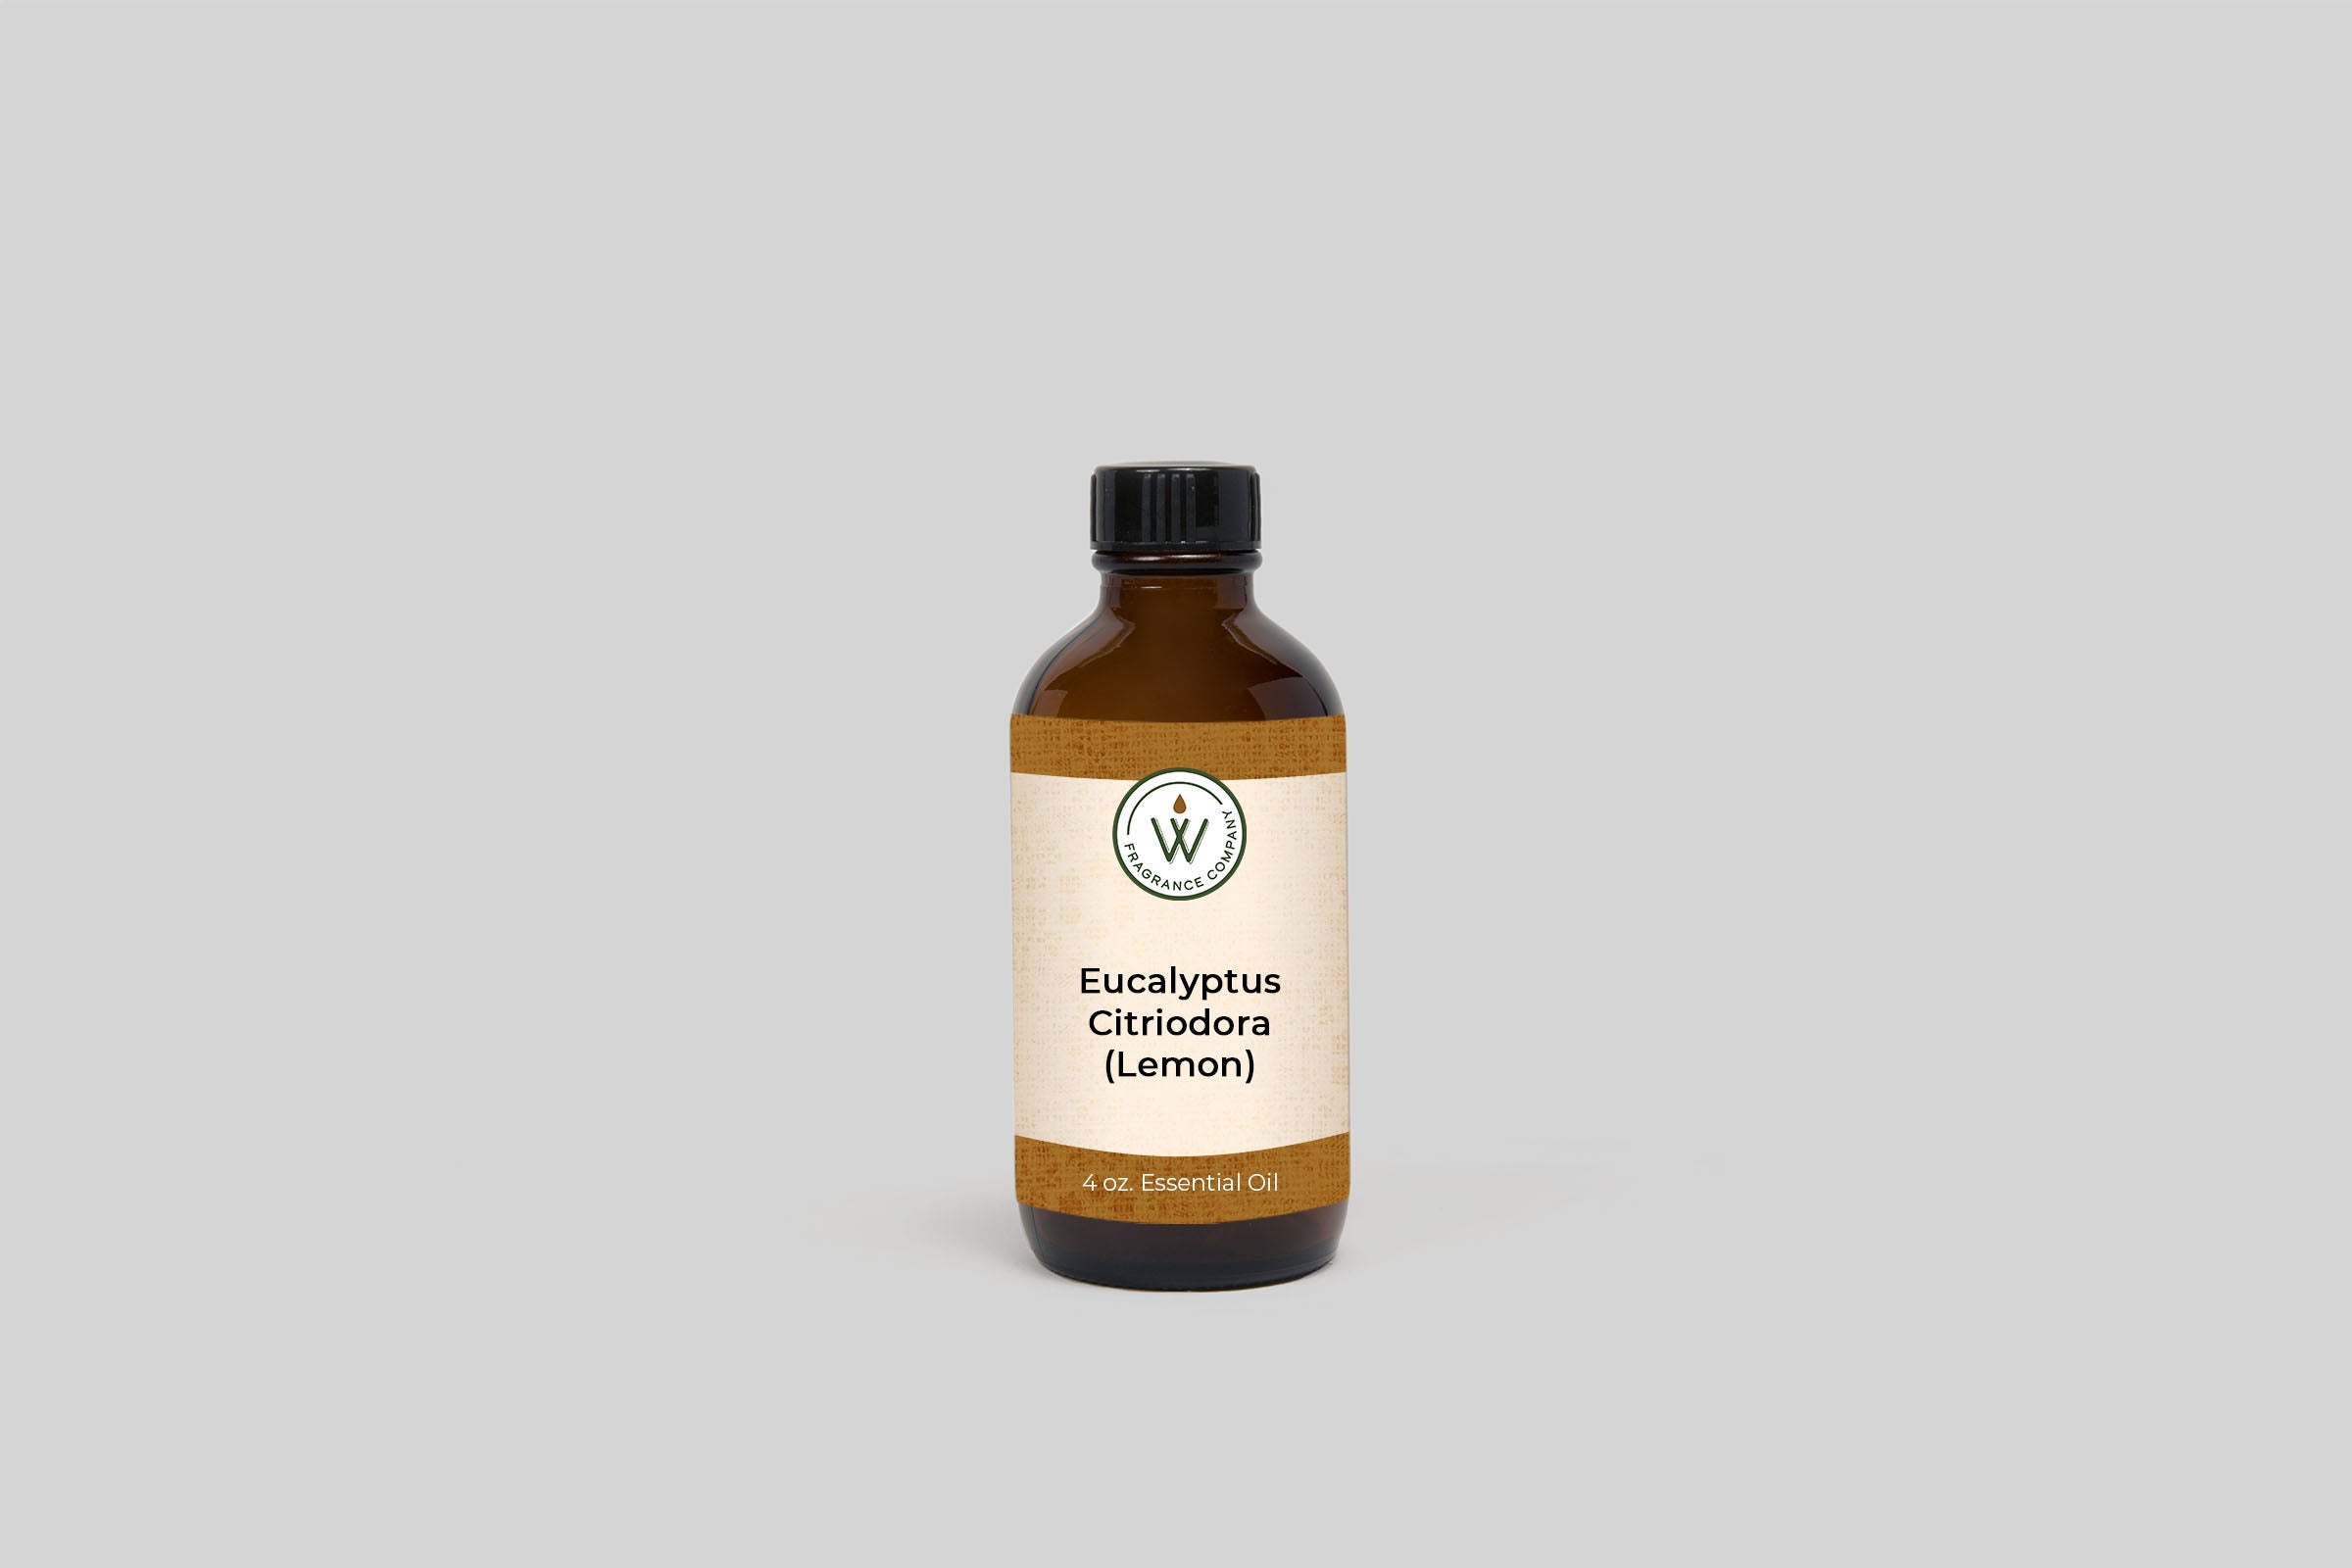 Eucalyptus Citriodora (Lemon) Essential Oil